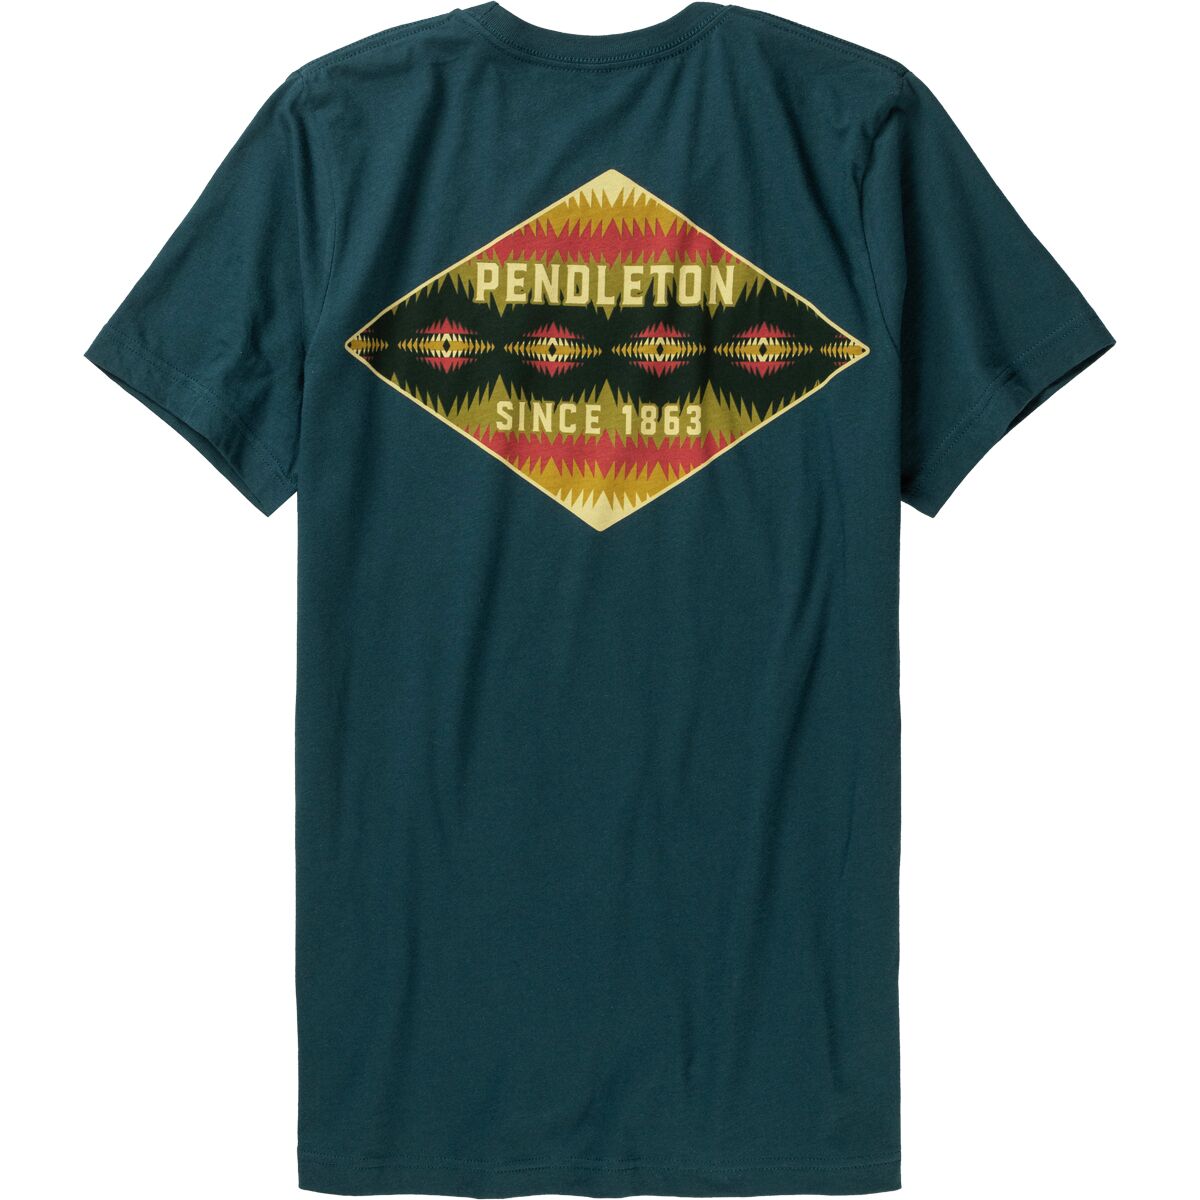 Pendleton Tye River Diamond Graphic T-Shirt - Men's